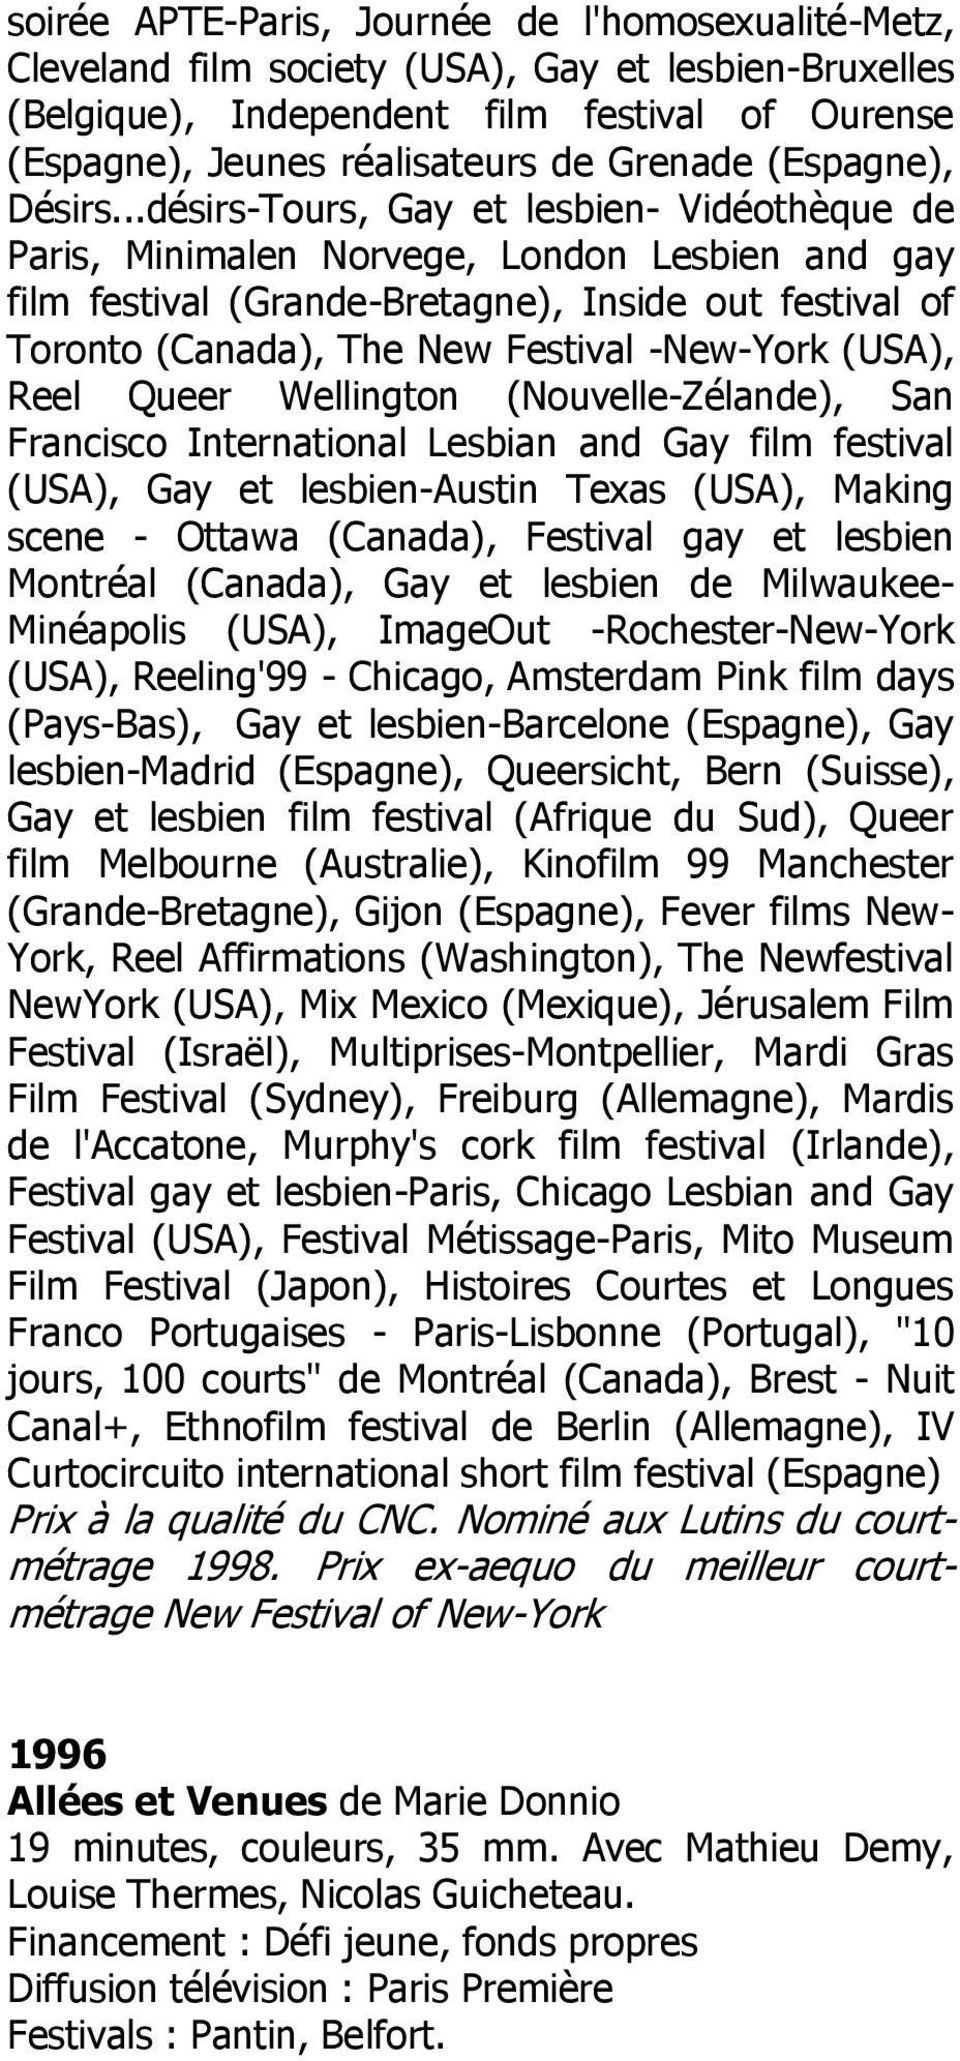 ..désirs-Tours, Gay et lesbien- Vidéothèque de Paris, Minimalen Norvege, London Lesbien and gay film festival (Grande-Bretagne), Inside out festival of Toronto (Canada), The New Festival -New-York